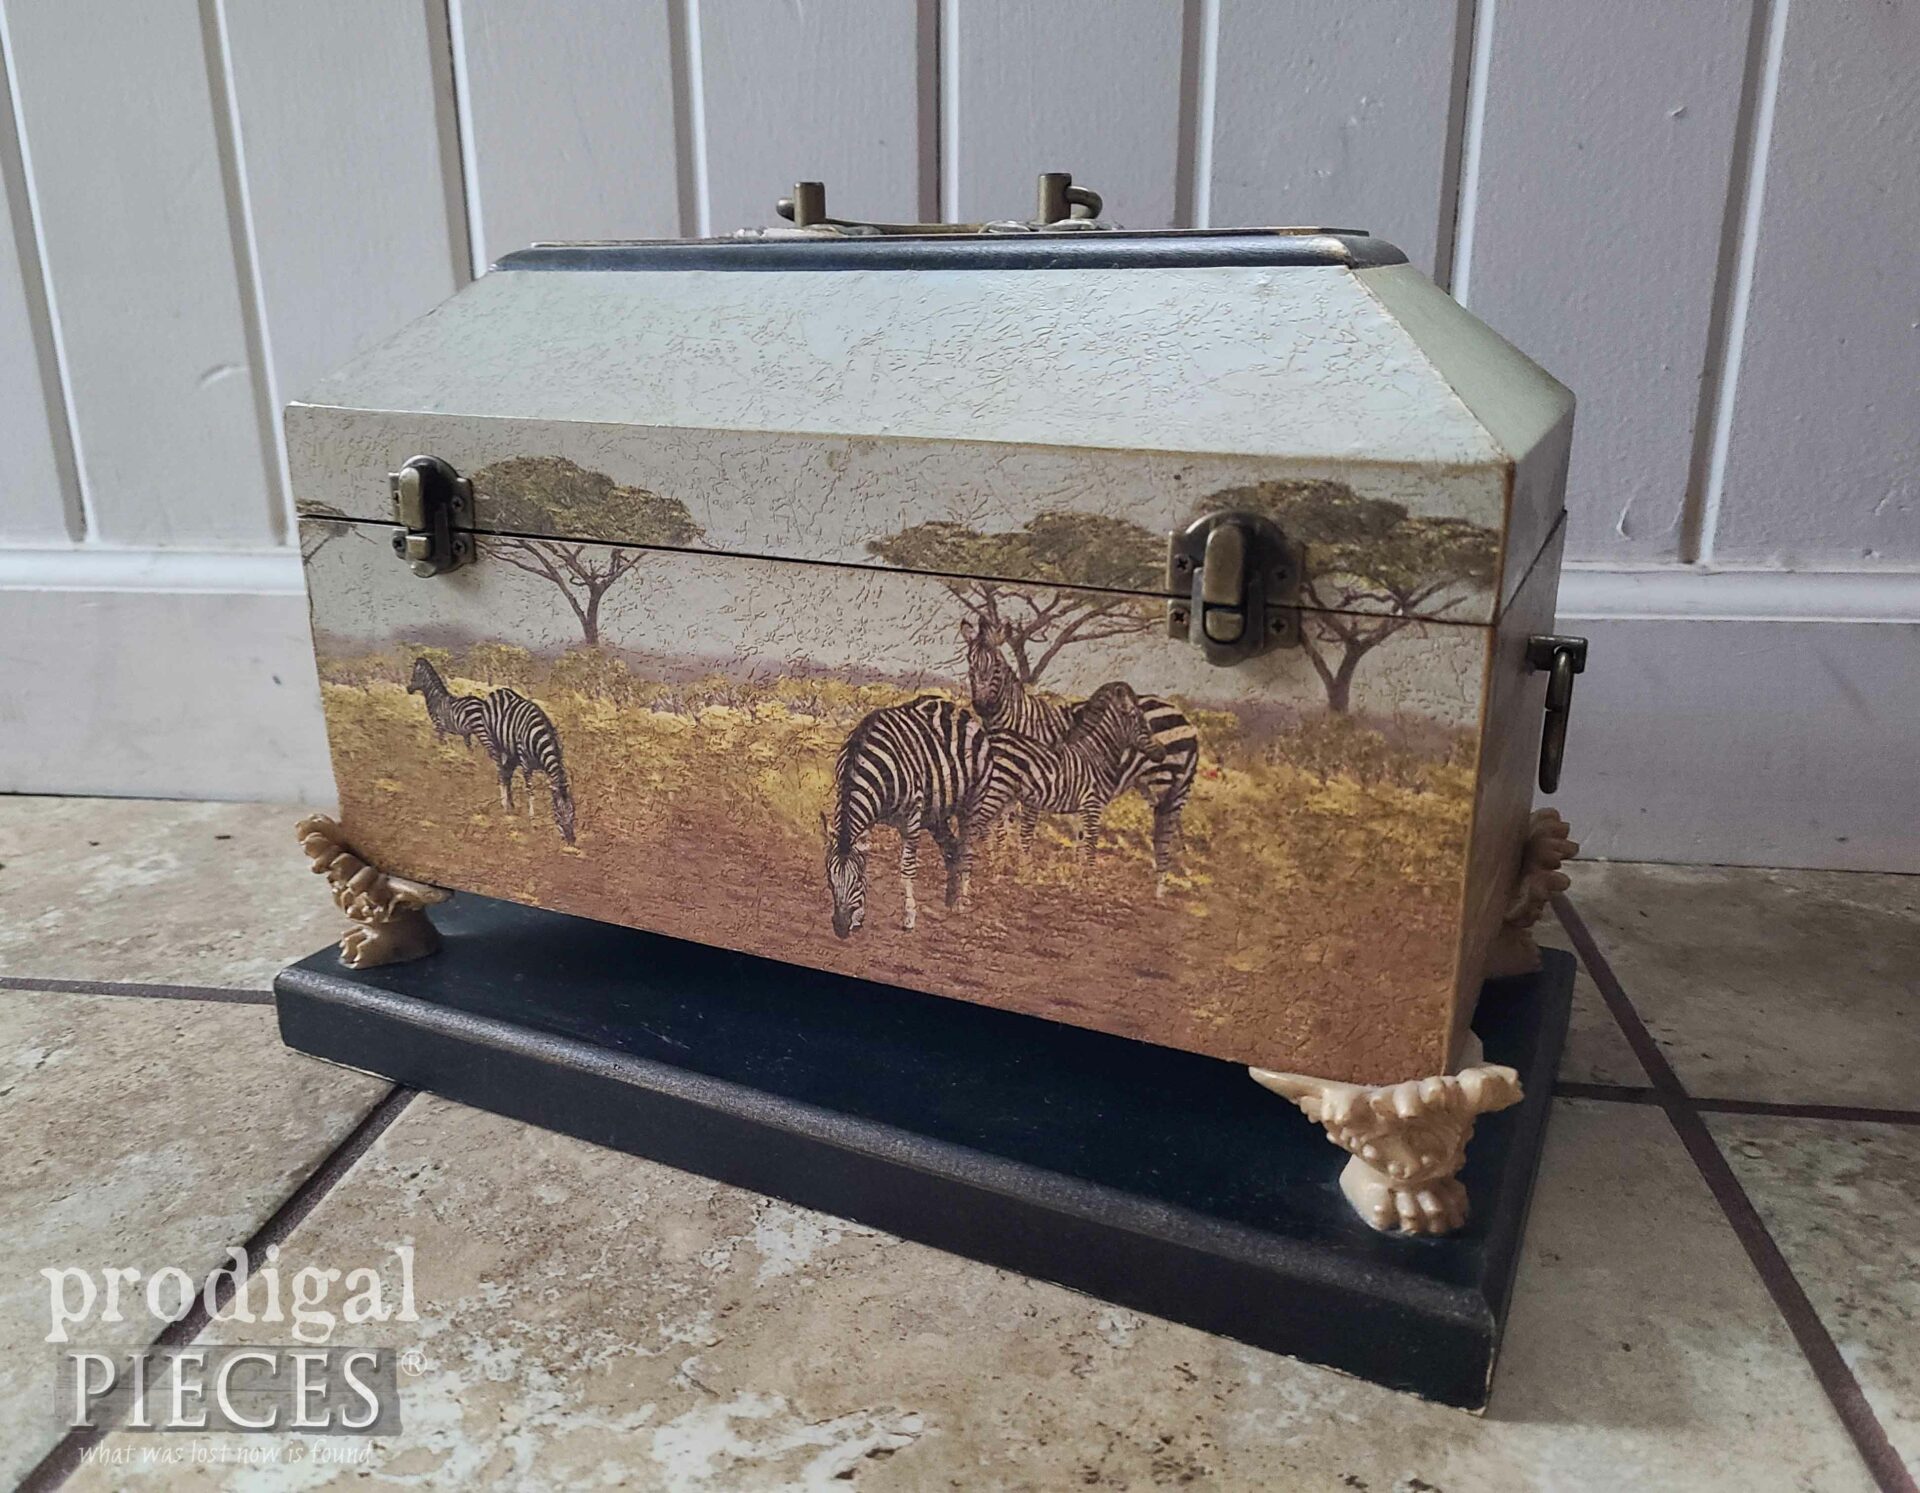 Thrifted Decorative Box Before Makeover | prodigalpieces.com #prodigalpieces